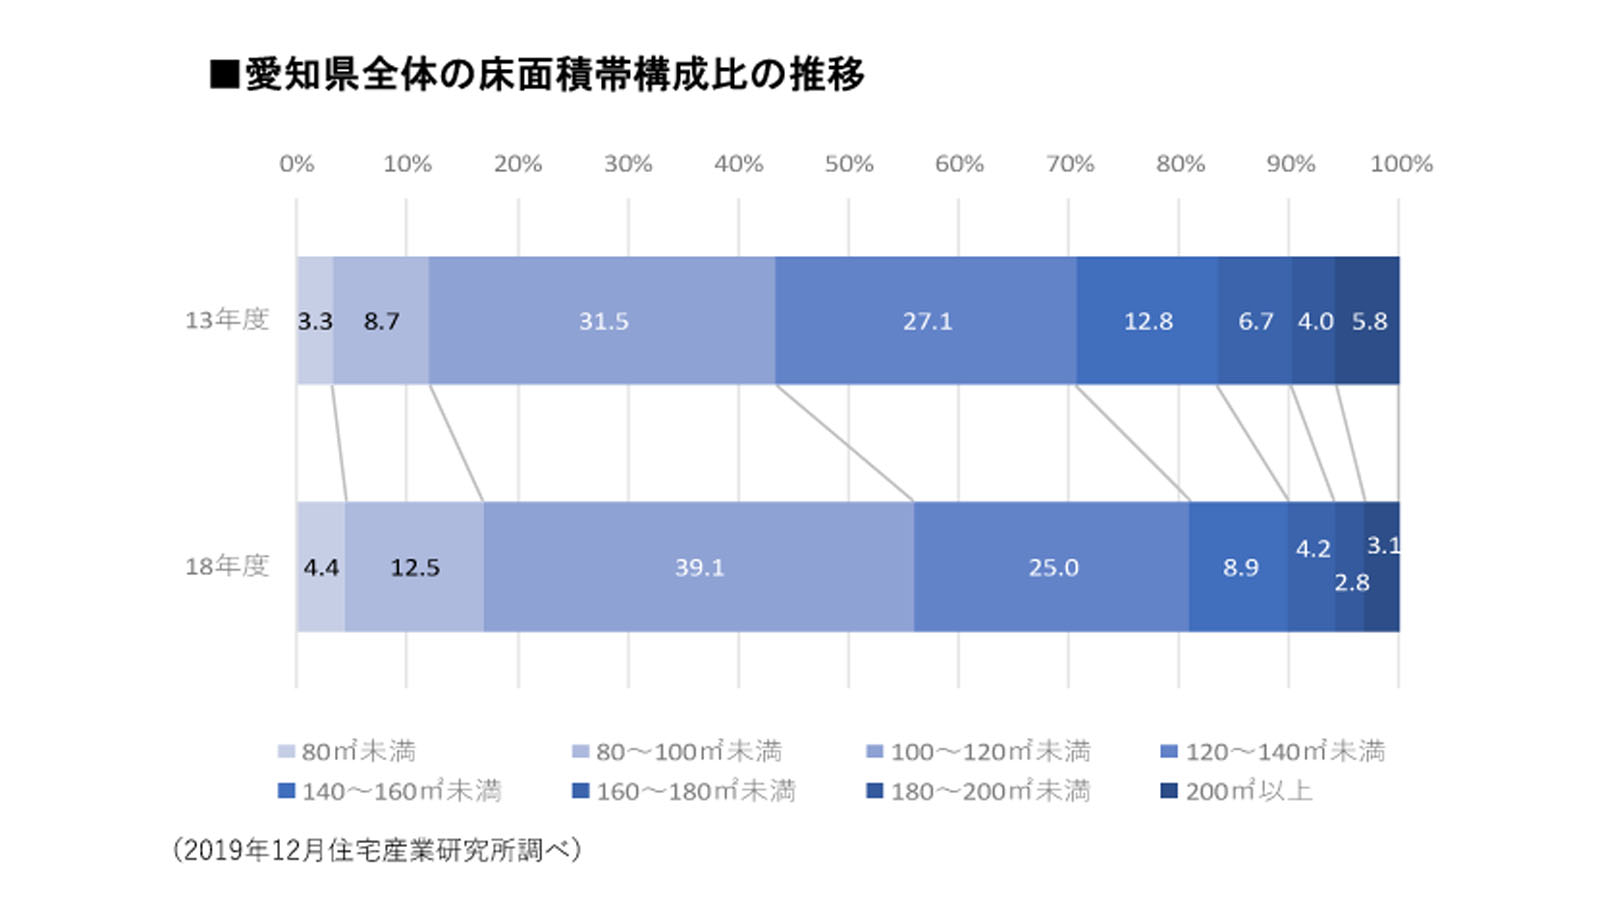 愛知県全体の床面積帯構成比の推移